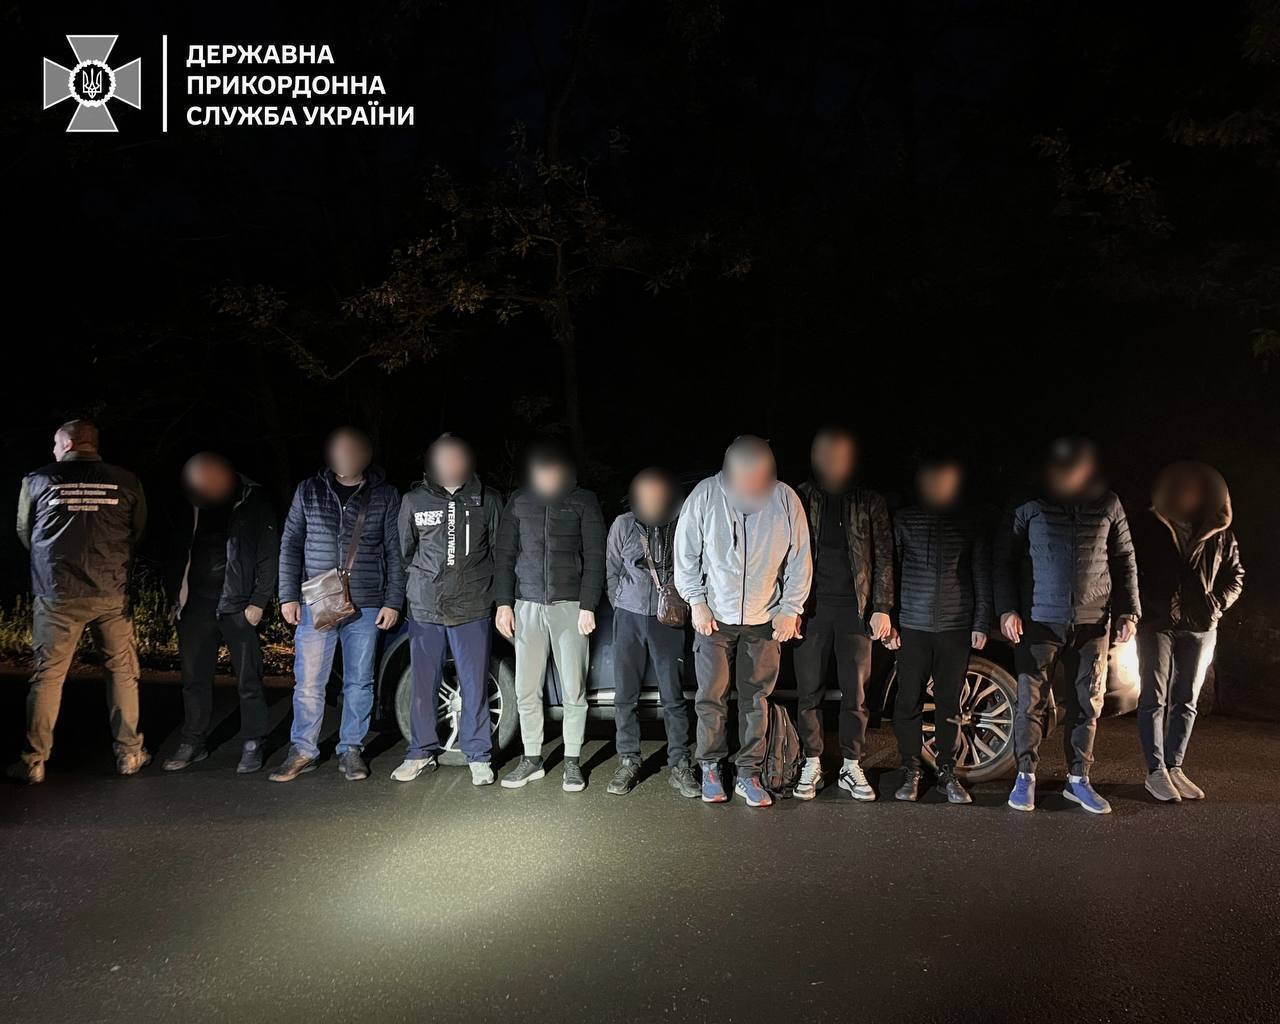 Чекали два місяці перетину кордону: прикордонники виявили групу чоловіків, які хотіли незаконно потрапити до Угорщини. Фото 